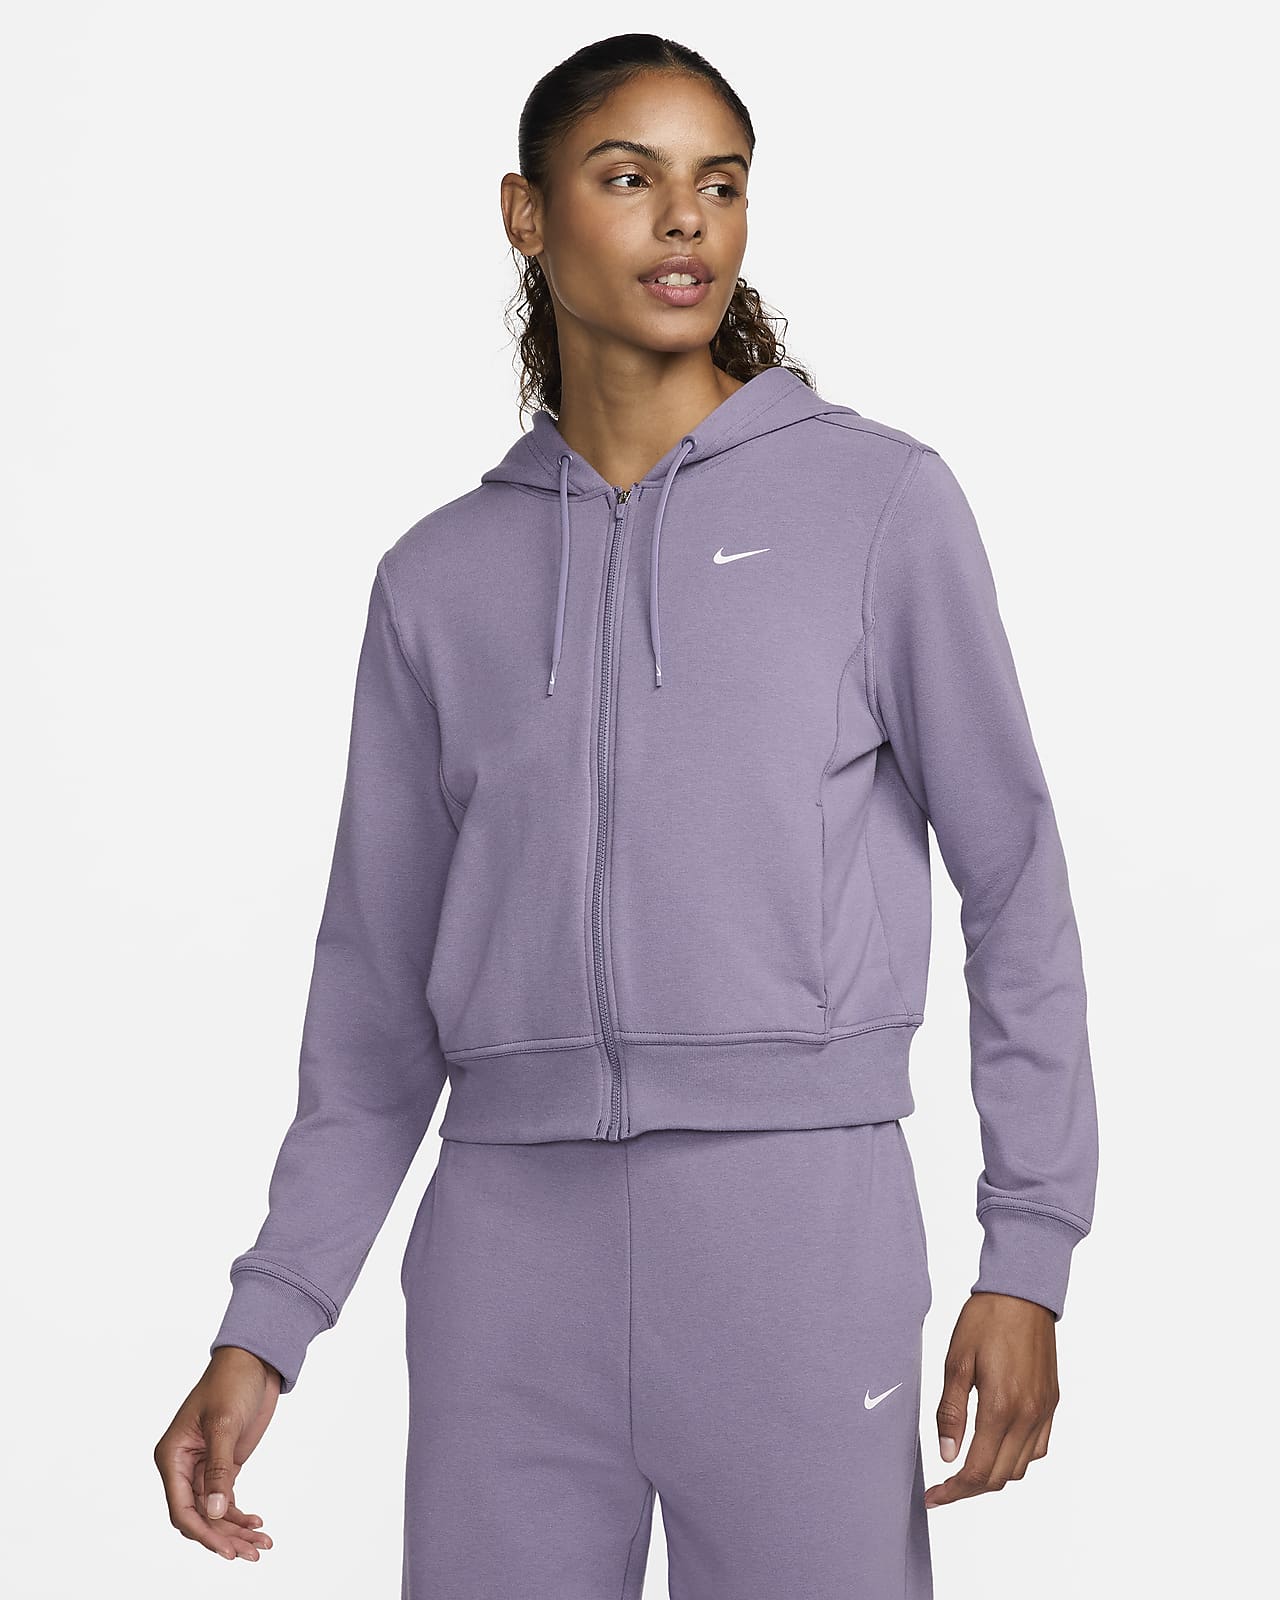 เสื้อมีฮู้ดซิปยาวผ้าเฟรนช์เทรีผู้หญิง Nike Dri-FIT One